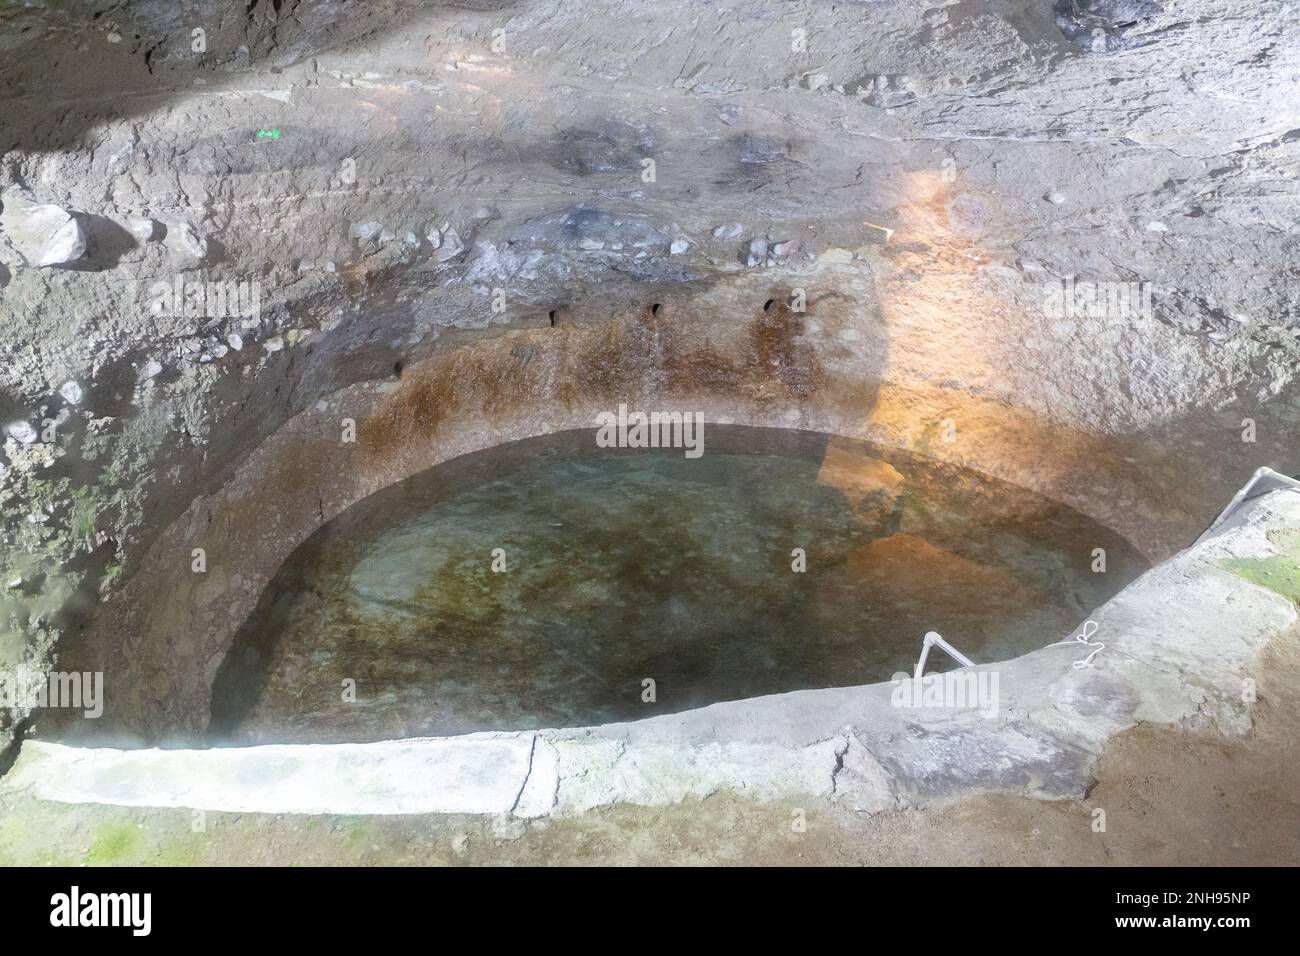 Larmes de la reine Tamar, source Sainte, étang de l'eau Sainte dans une grotte sculptée dans le complexe du monastère de la grotte de Vardzia en Géorgie, qui aurait des caractéristiques de guérison. Banque D'Images